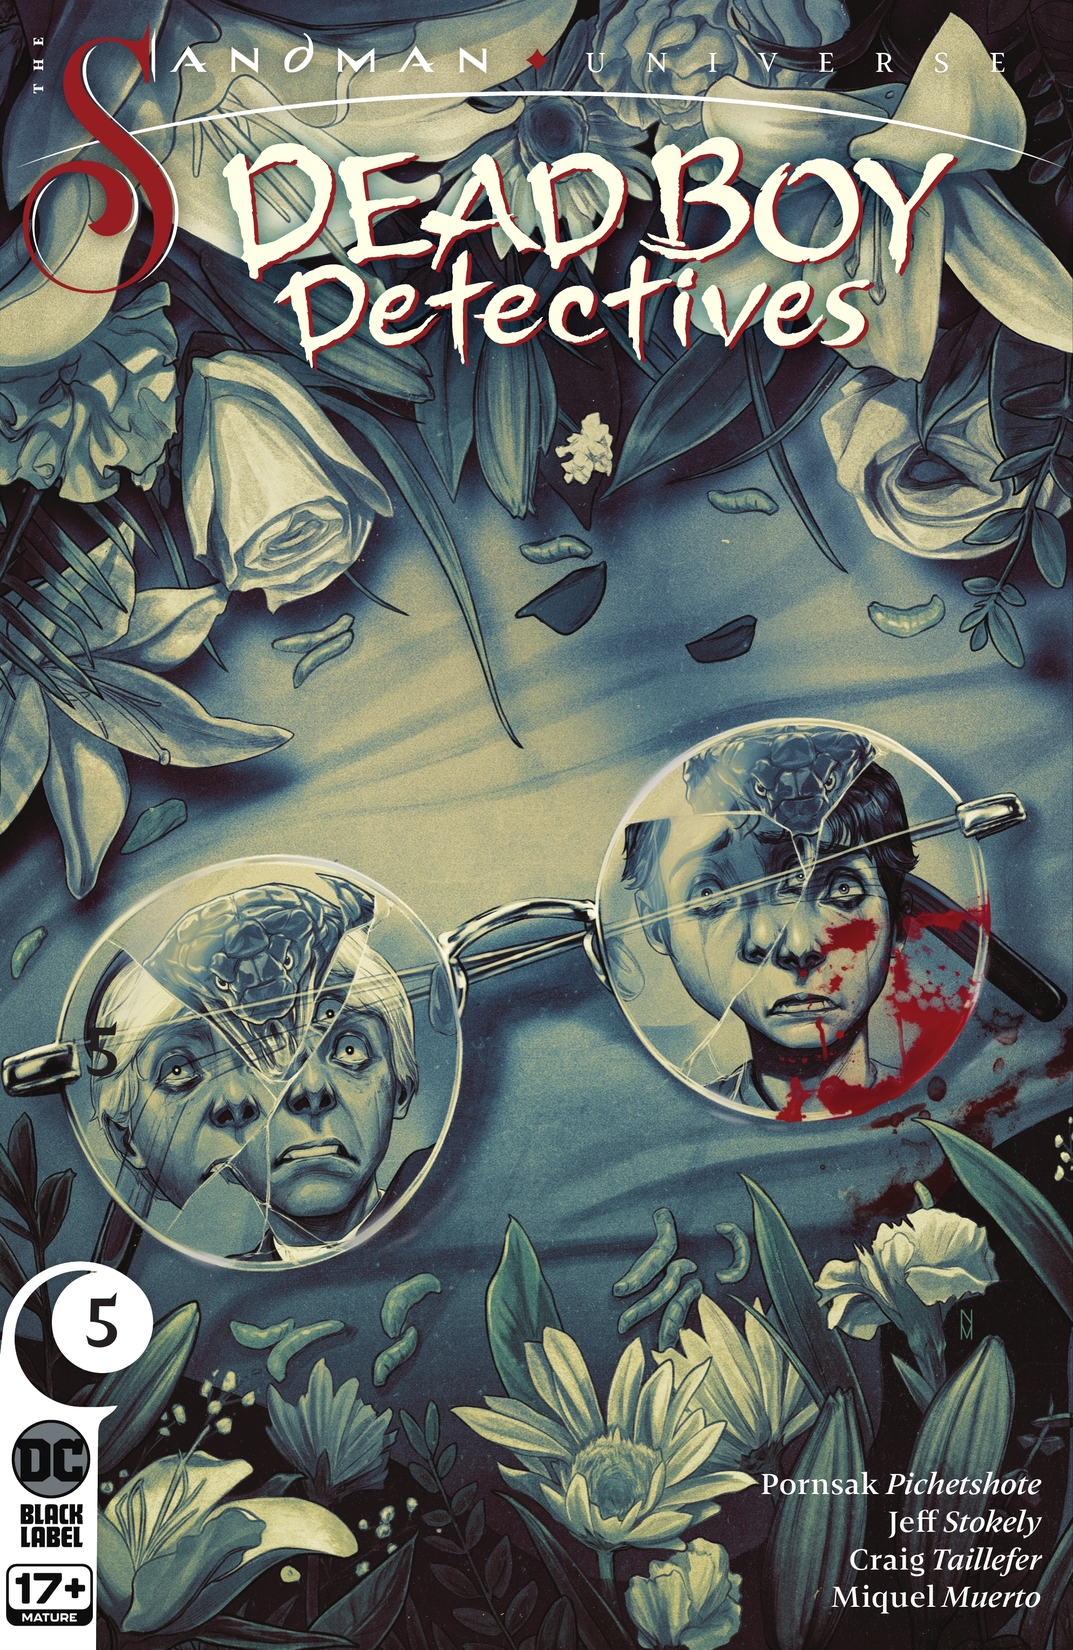 The Sandman Universe: Dead Boy Detectives #5 preview images